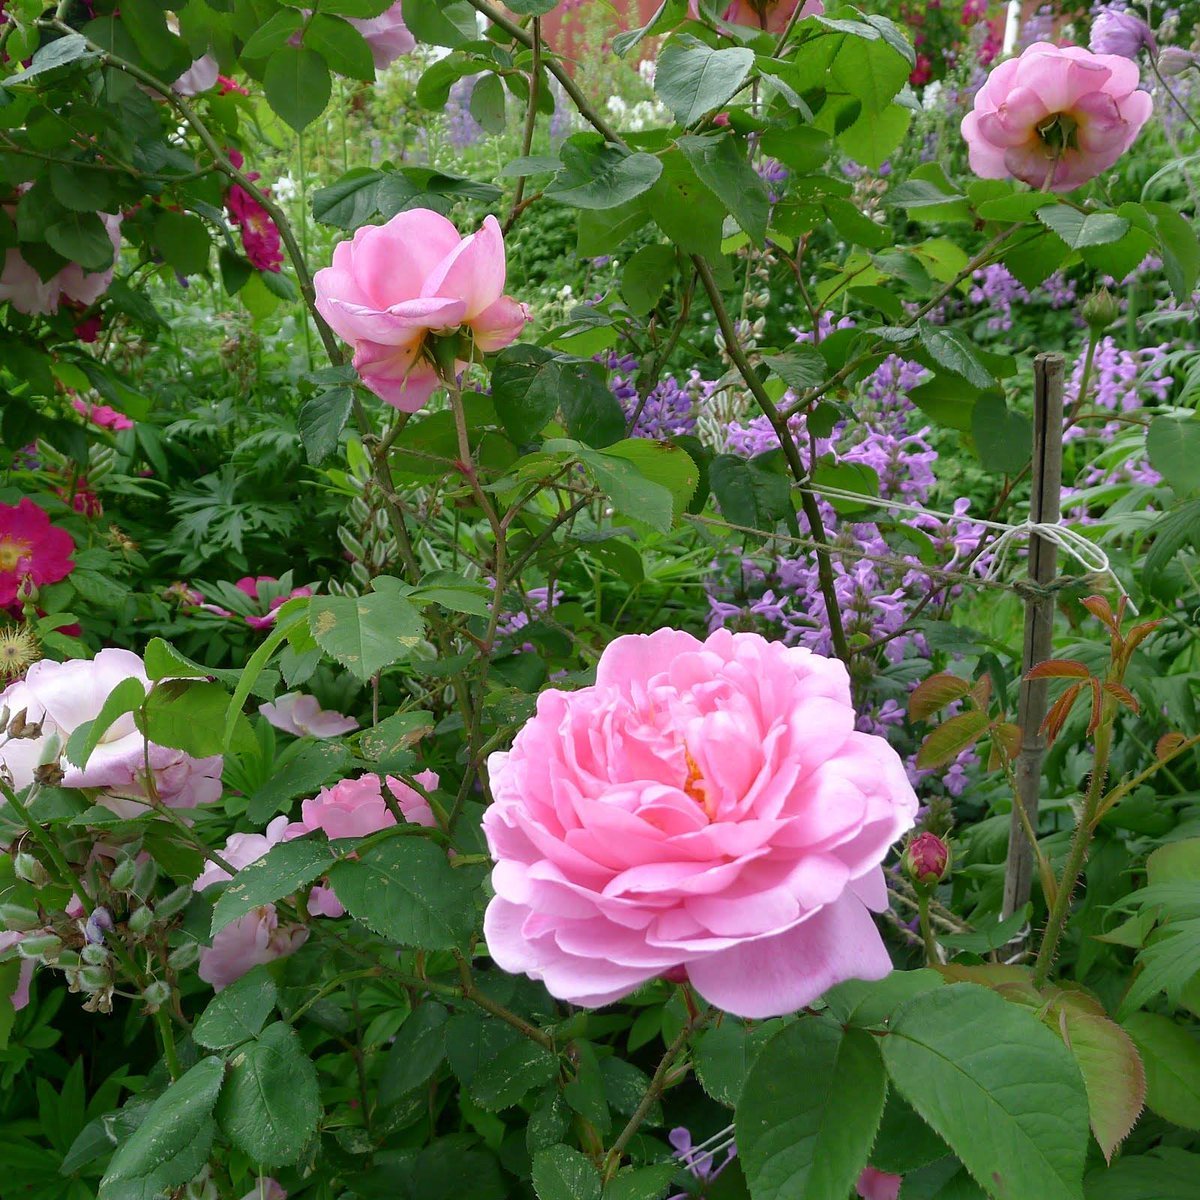 Кантри хоум роза фото и описание